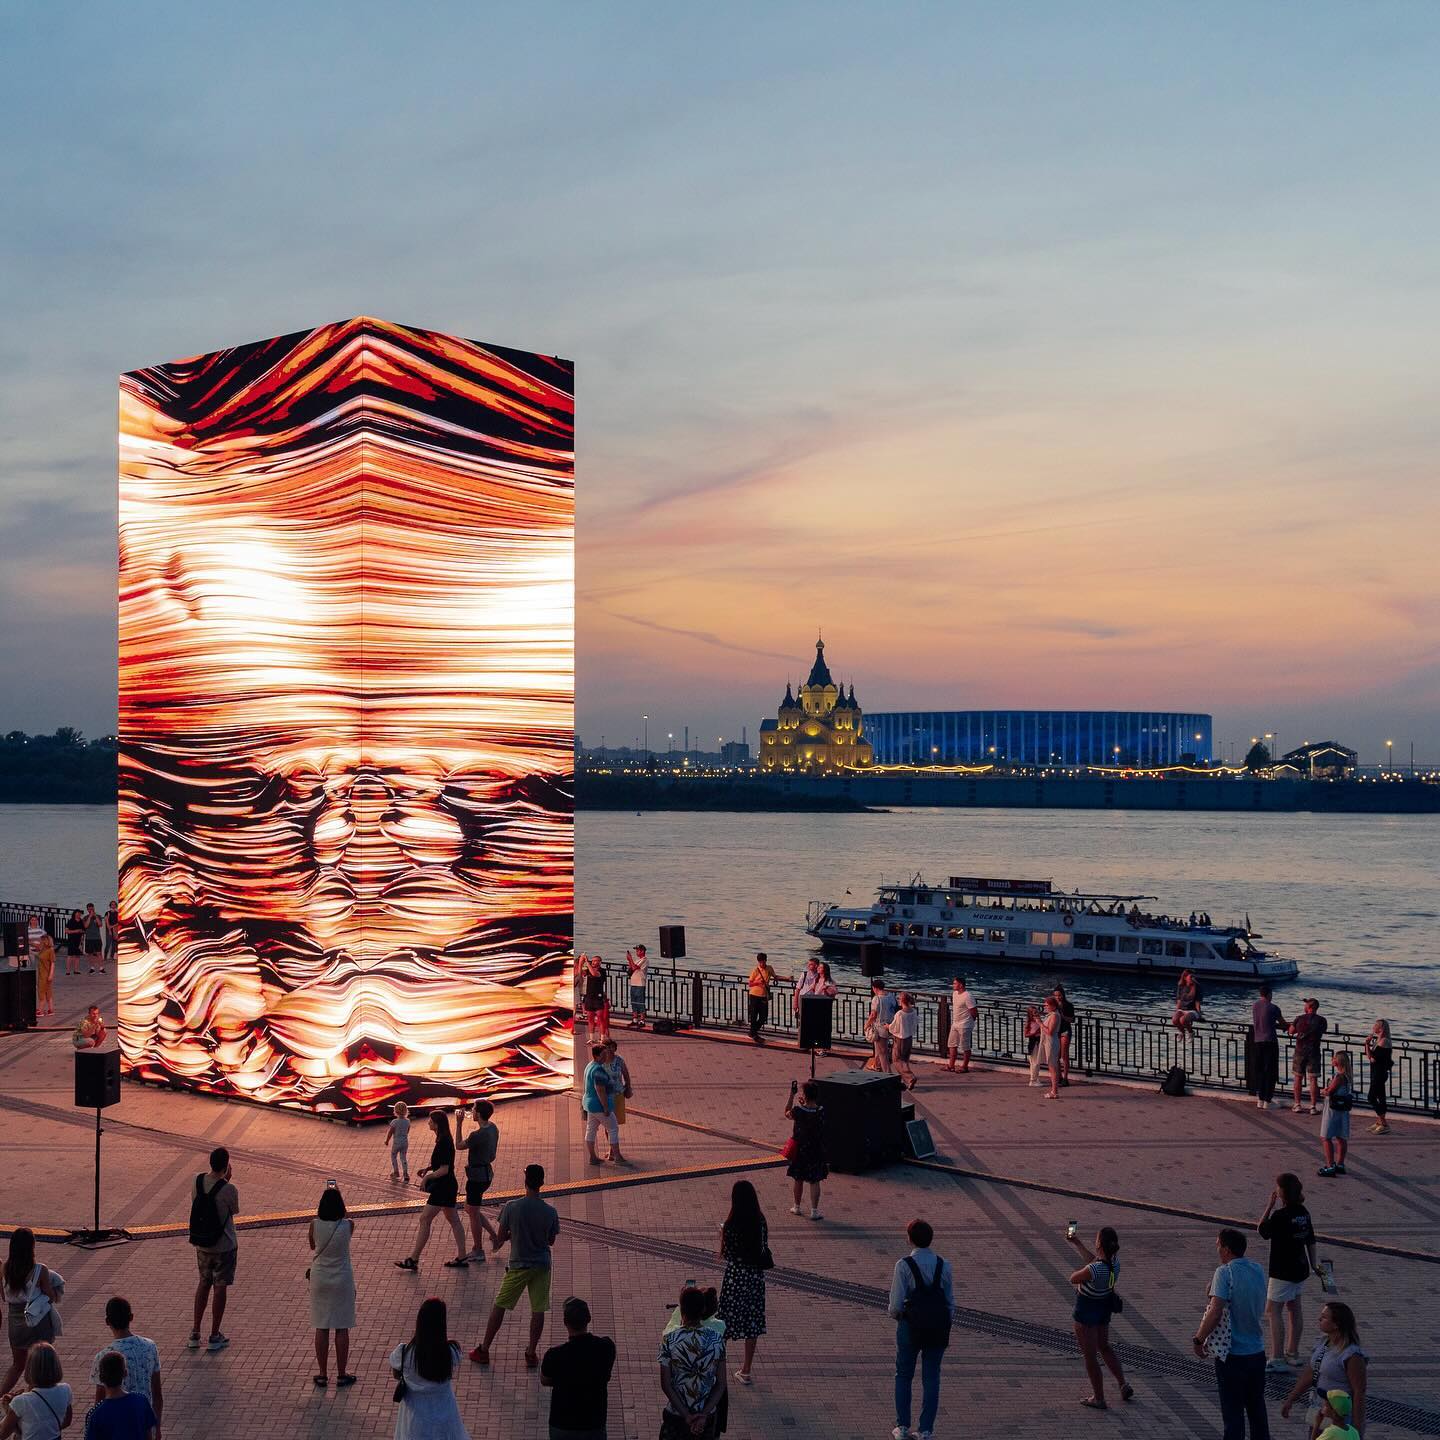 Ксюша Чеховская: «Раньше любую инсталляцию называли лазерным шоу». Как фестиваль INTERVALS меняет отношение к медиаискусству